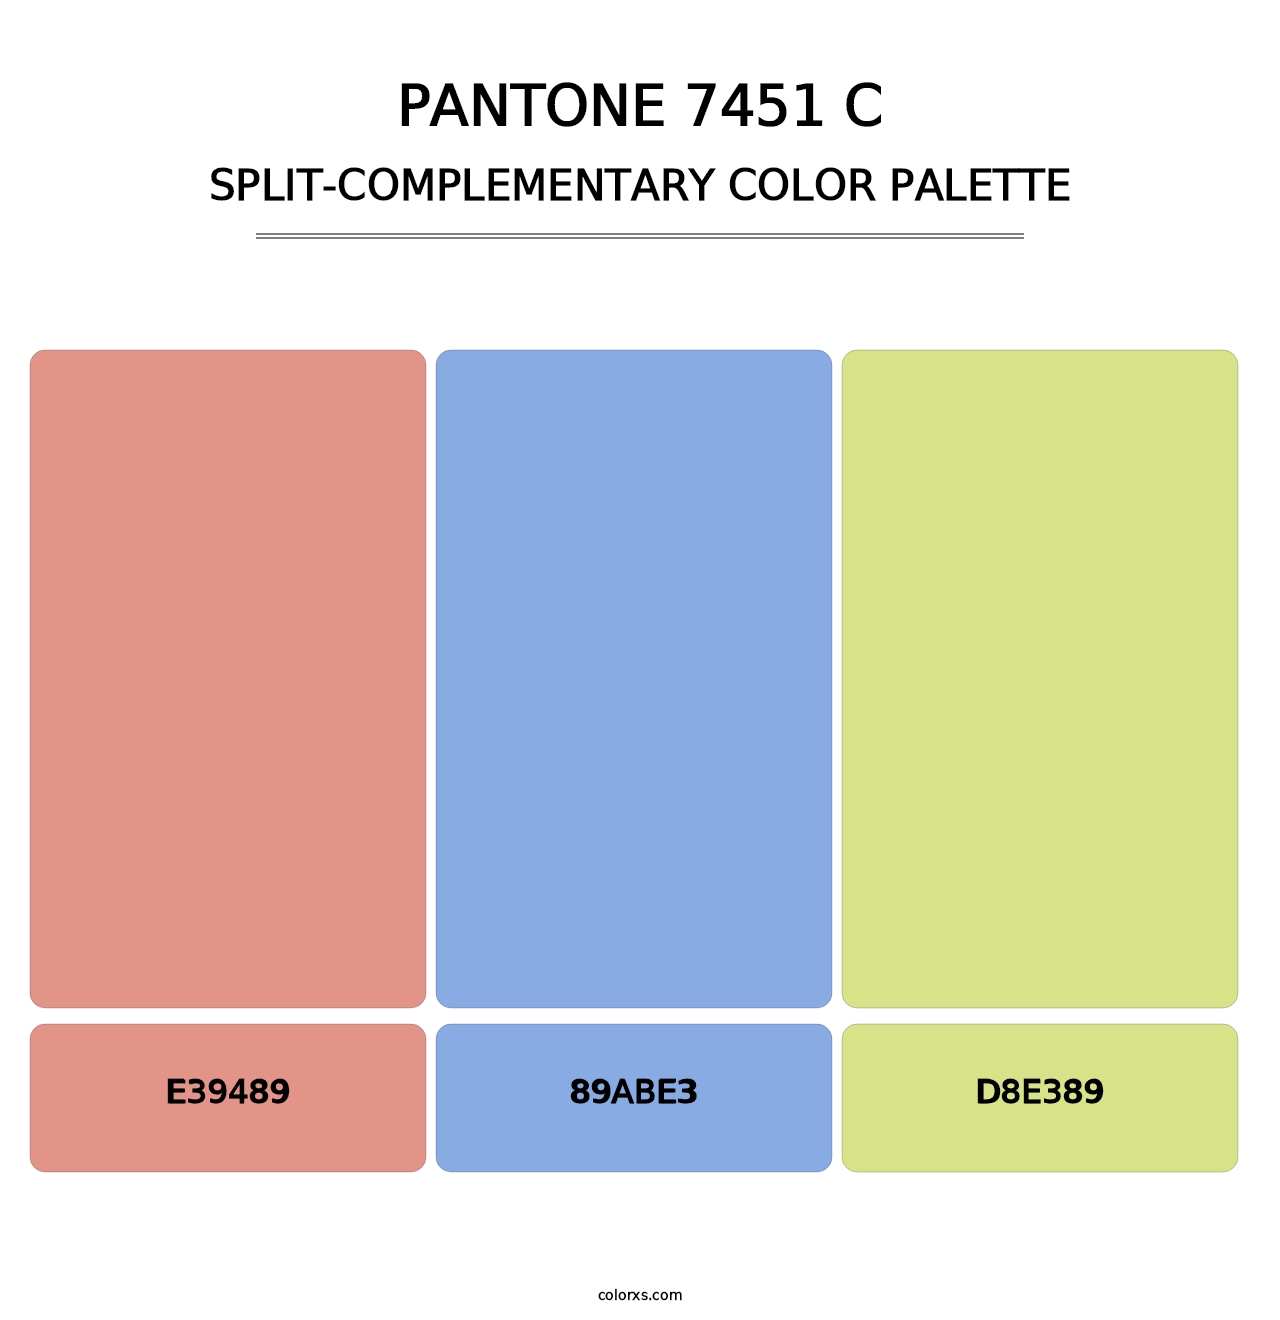 PANTONE 7451 C - Split-Complementary Color Palette